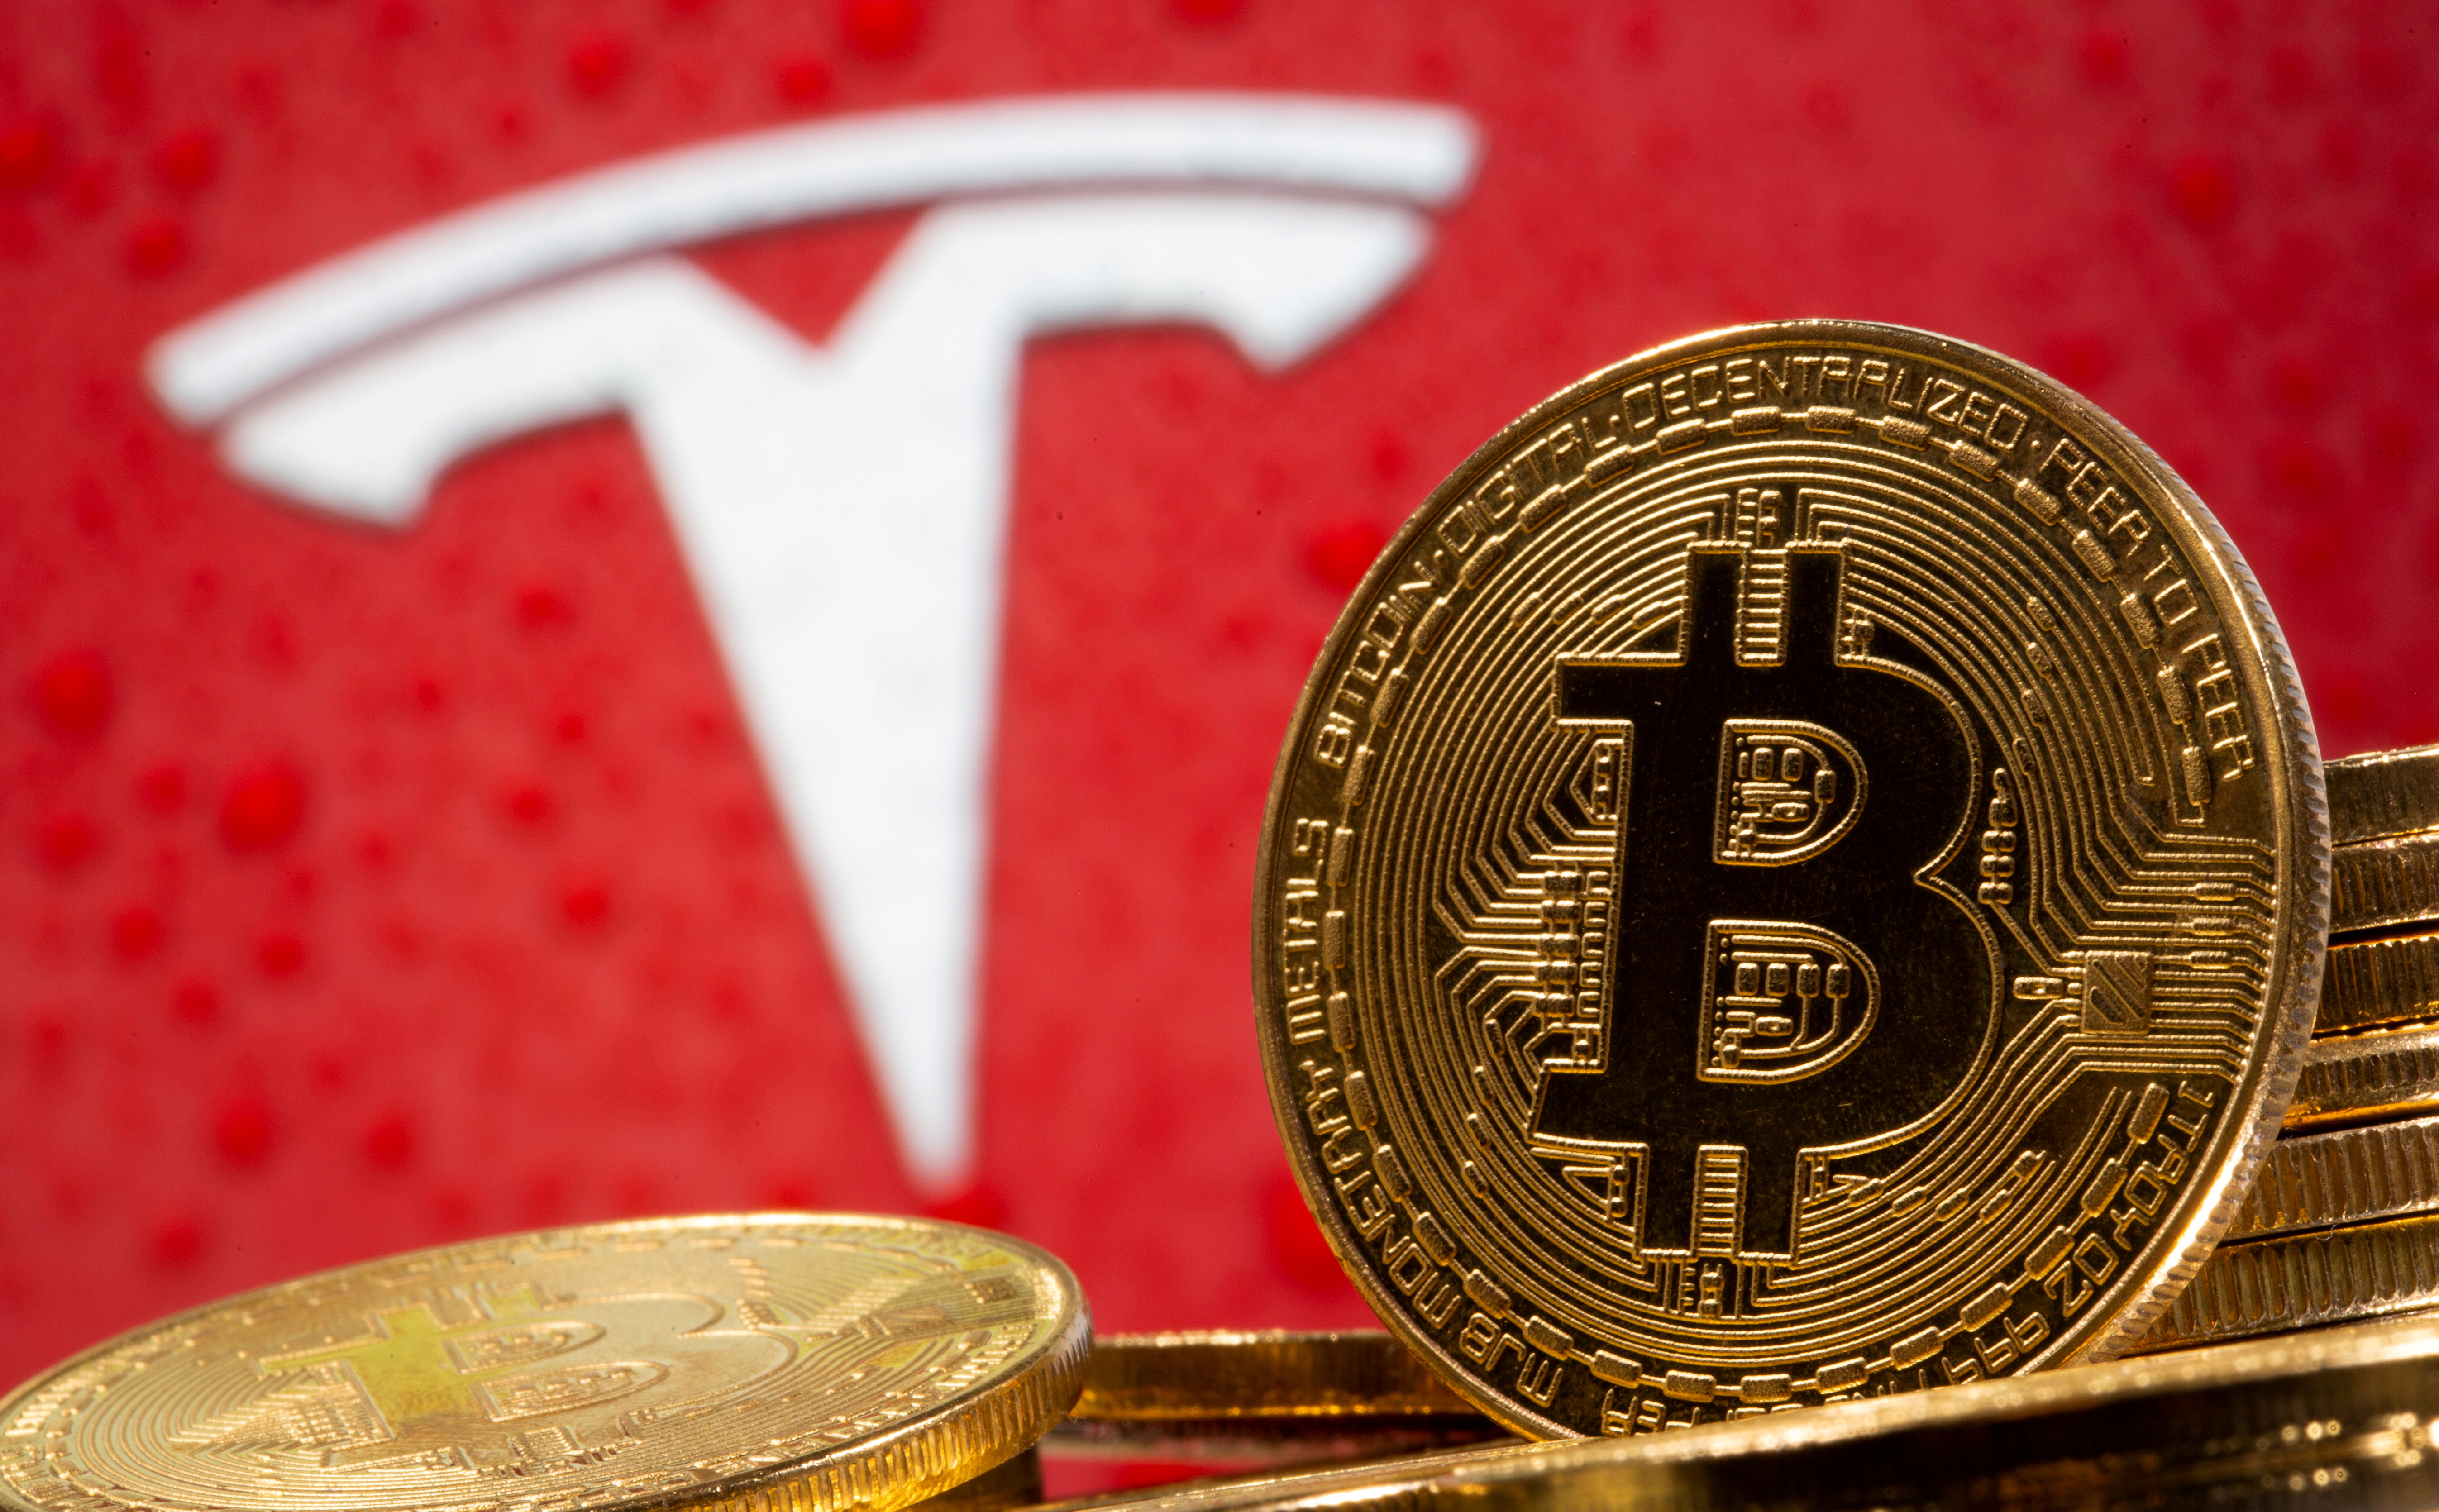 Ayer el bitcoin superó los USD 47.000 por unidad luego de que Tesla anunciara que invertirá USD 1.500 millones en la criptomoneda (REUTERS/Dado Ruvic/Illustration/File Photo/File Photo)